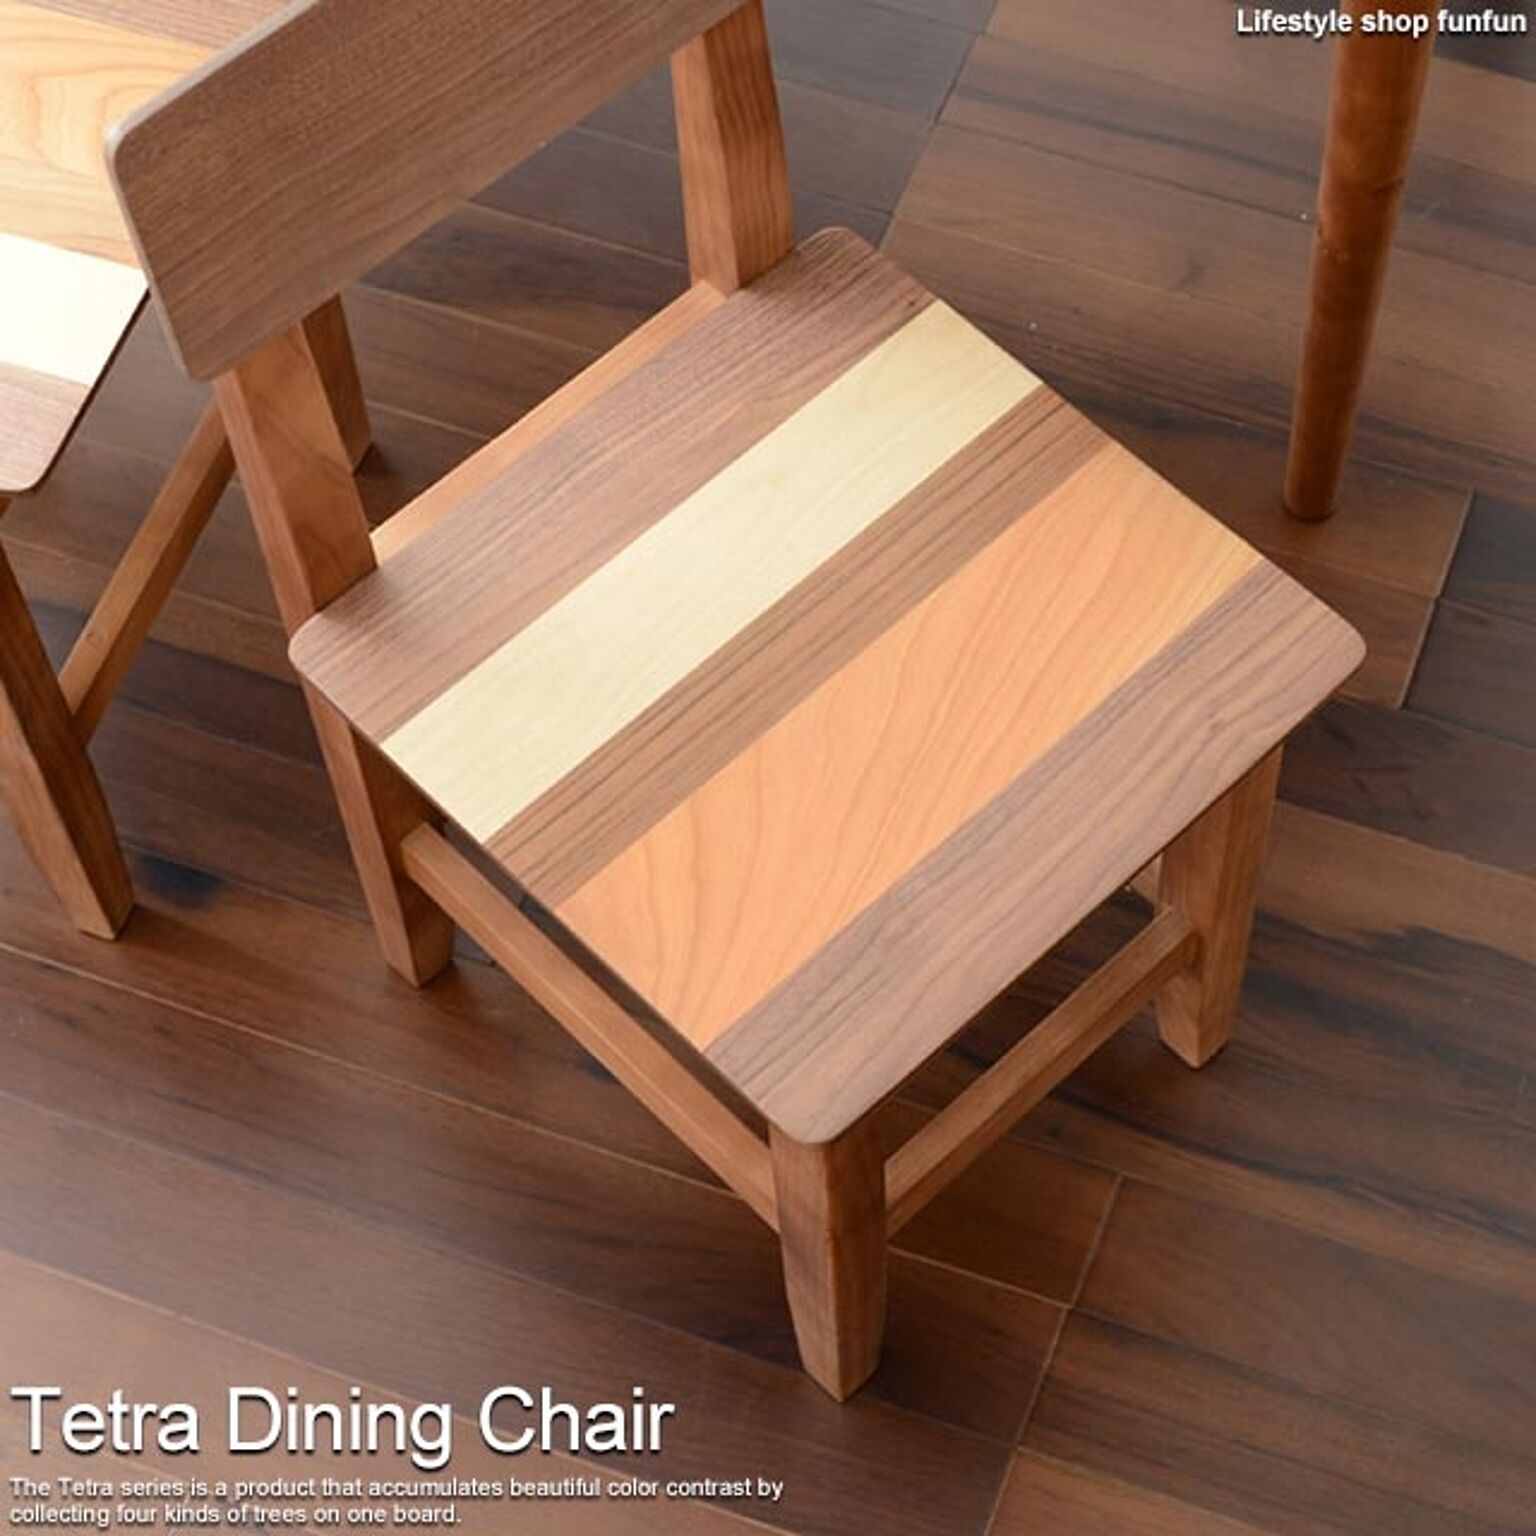 ダイニングチェア 椅子 Tetra テトラ 木製チェア チェアー 椅子 パーソナルチェア 天然木 おしゃれ かわいい シンプル 